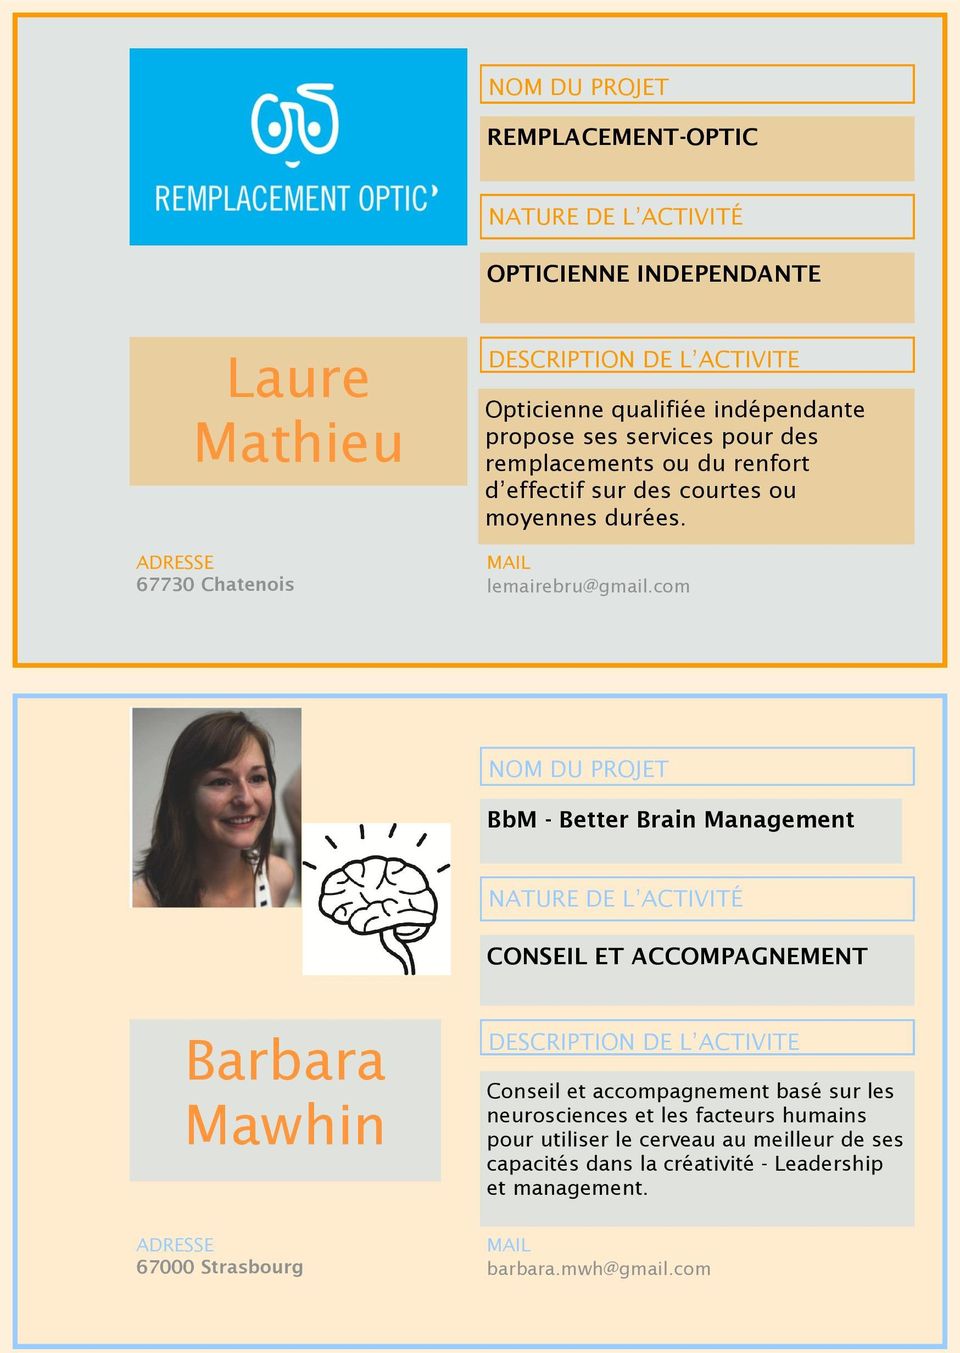 com BbM - Better Brain Management CONSEIL ET ACCOMPAGNEMENT Barbara Mawhin Conseil et accompagnement basé sur les neurosciences